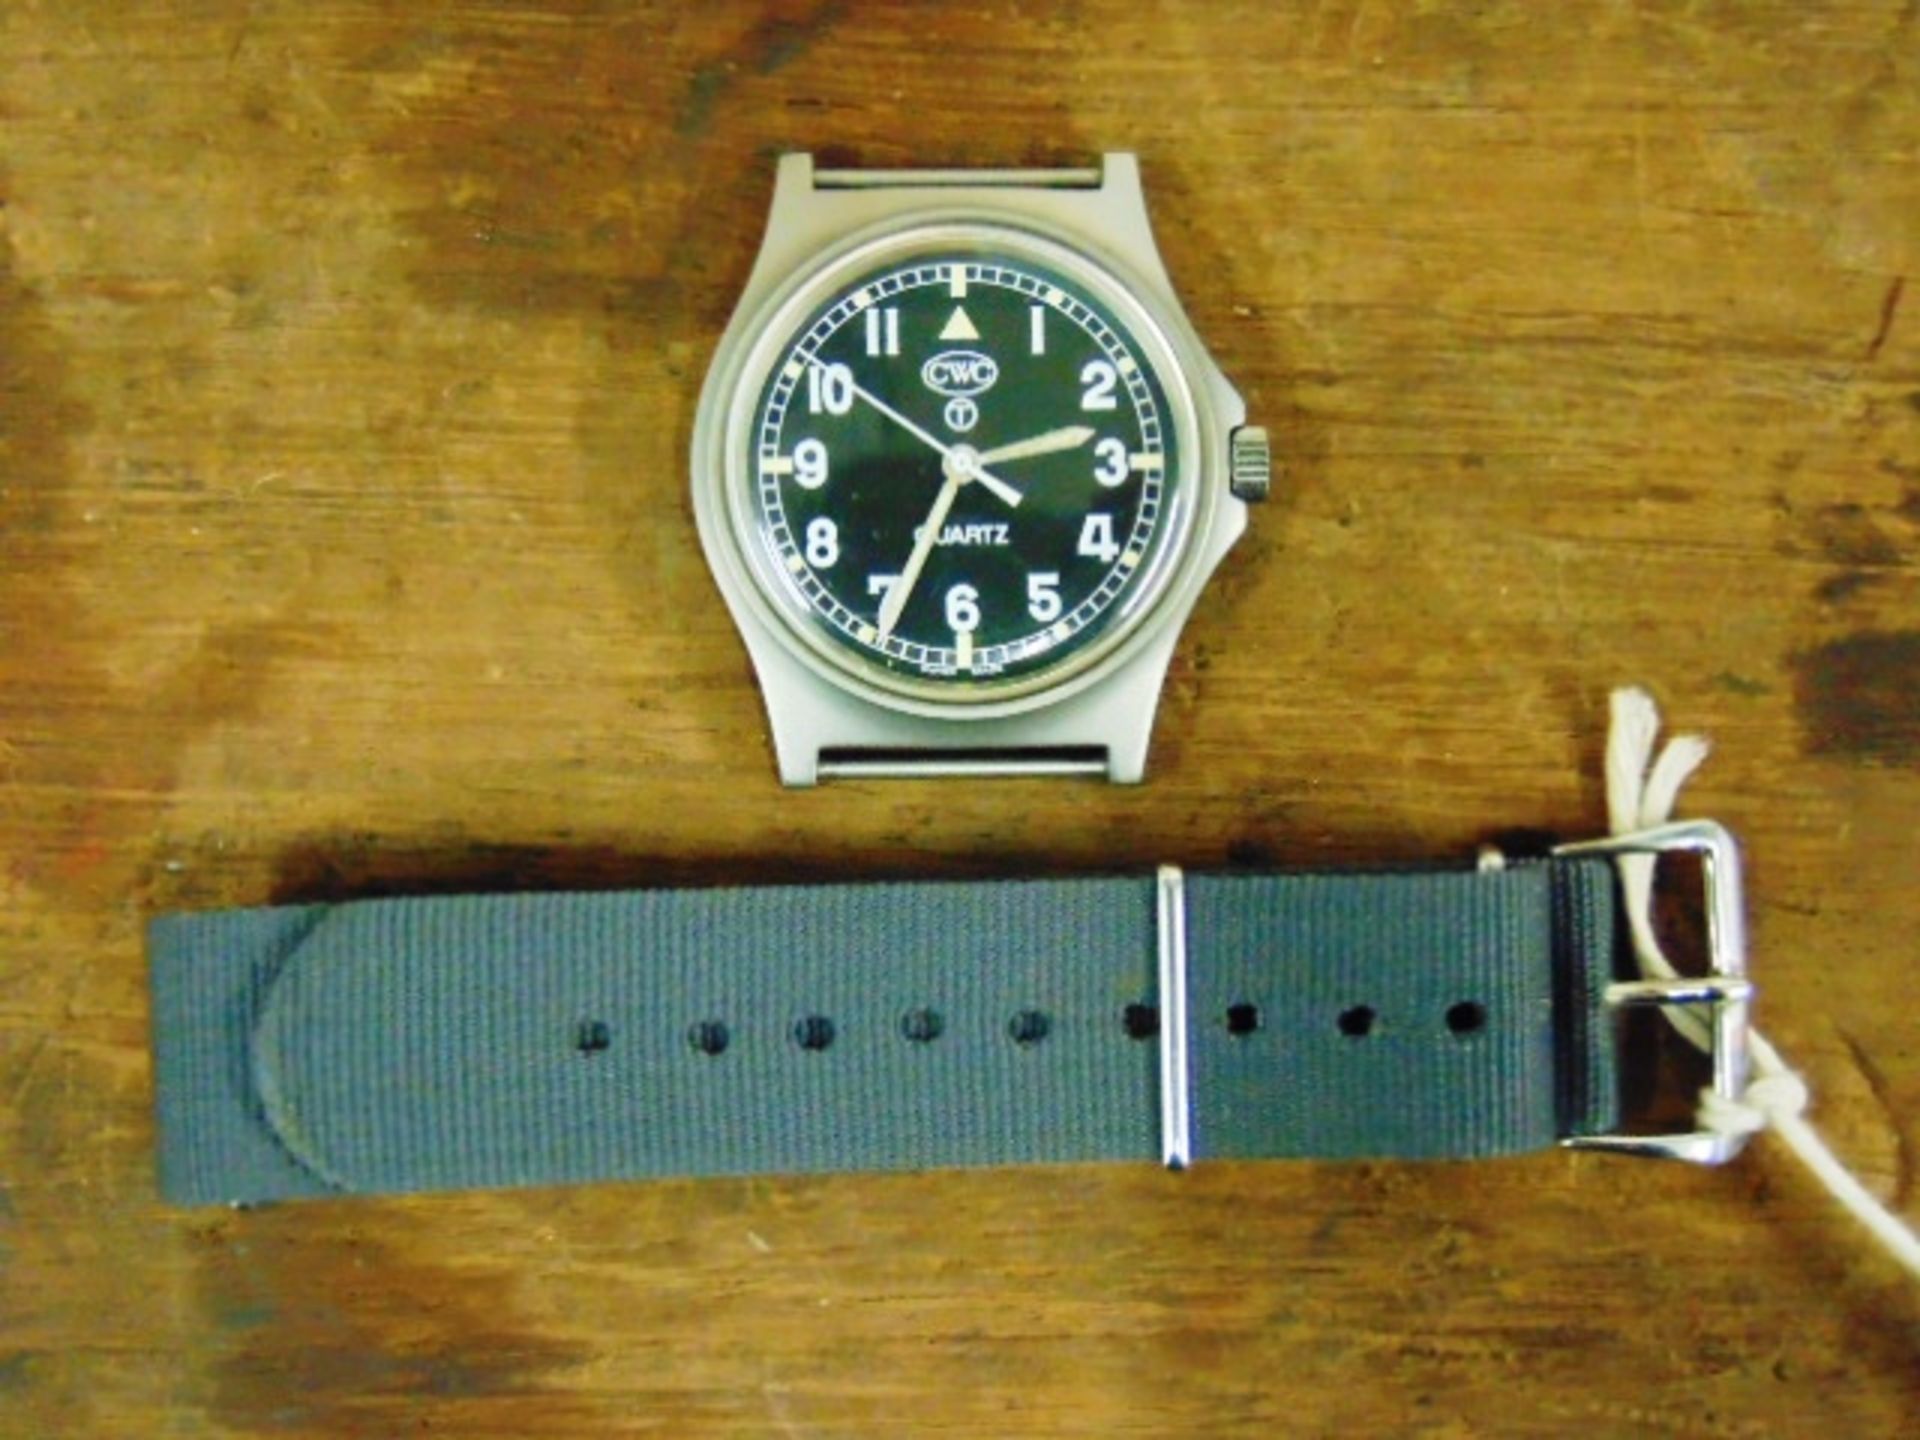 Unissued Genuine British Army, Waterproof CWC quartz wrist watch - Image 4 of 6